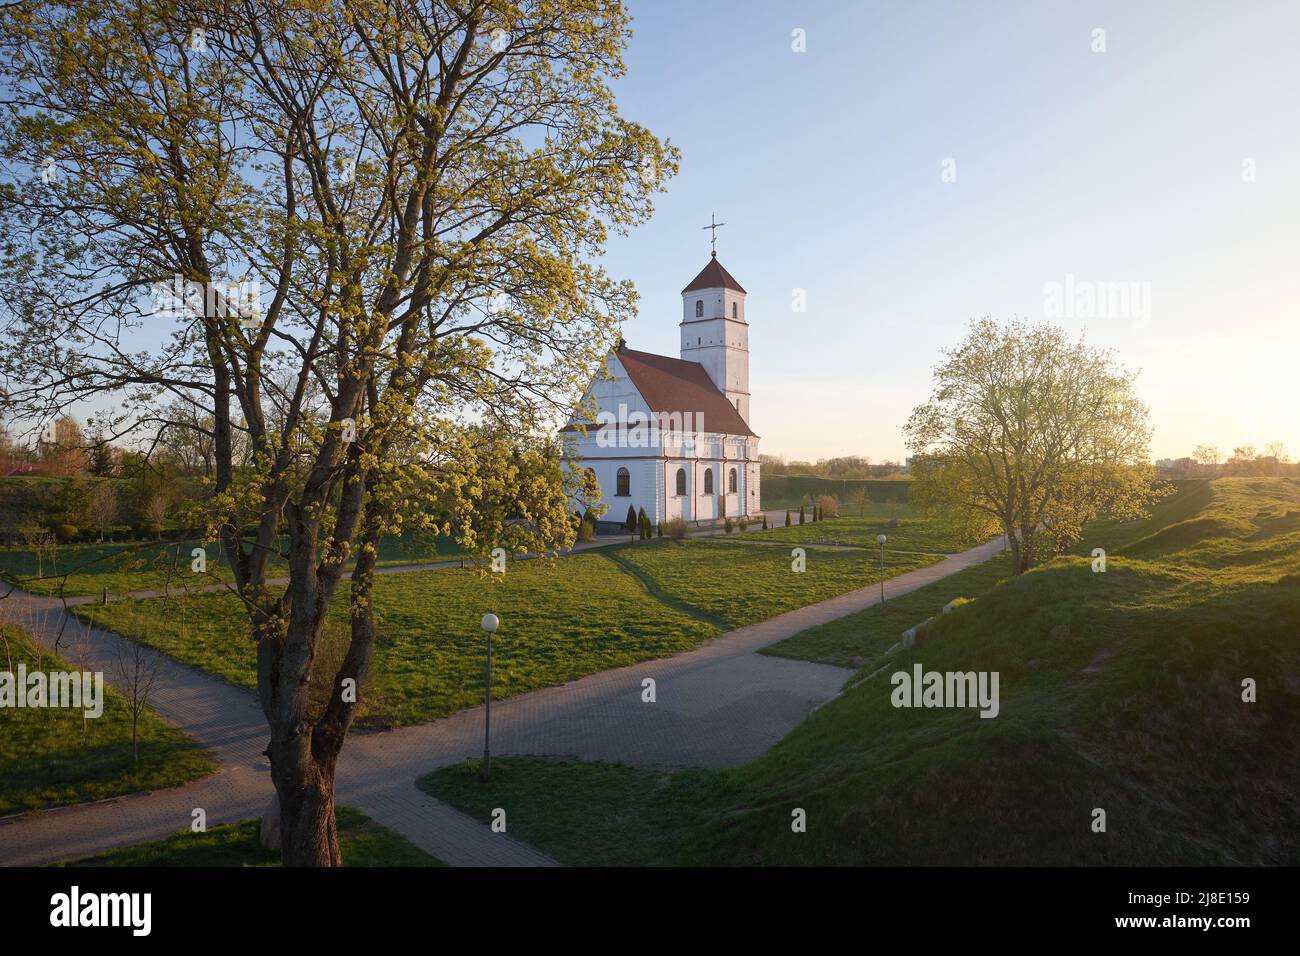 Antica chiesa di trasfigurazione ortodossa al tramonto nella città di Zaslavl, nella regione di Minsk. Bielorussia. Foto Stock